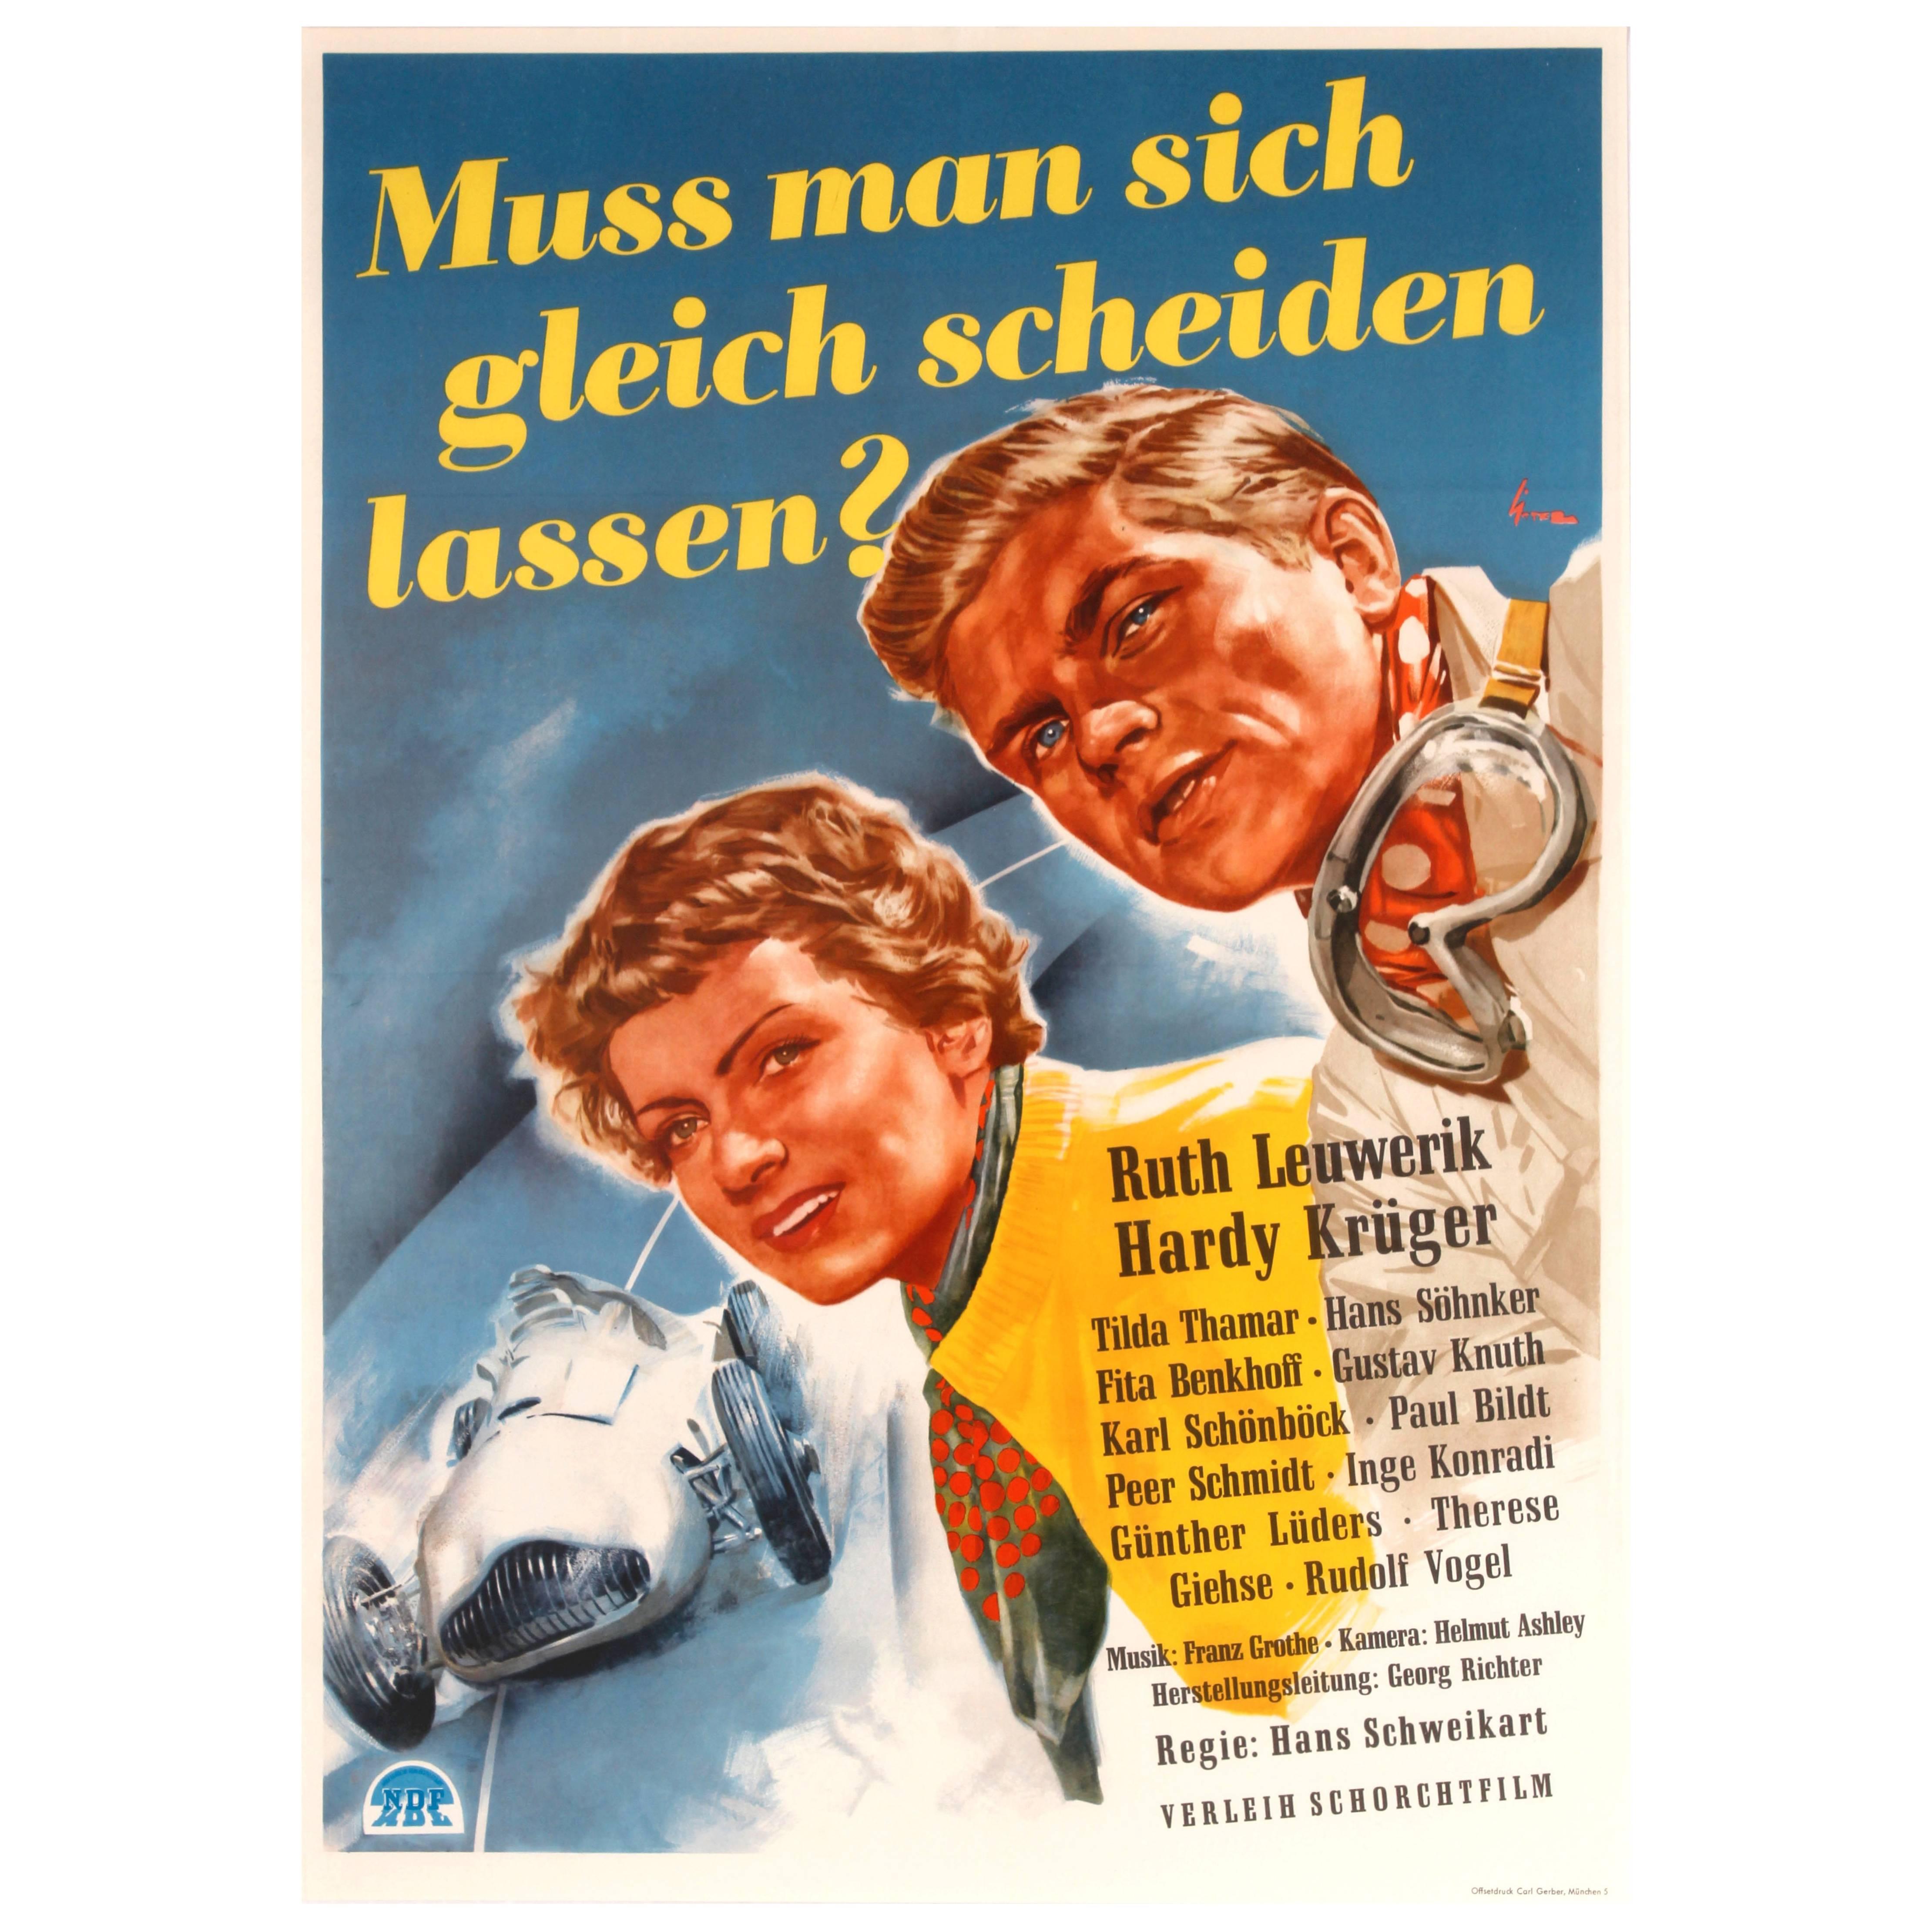 Original Vintage Movie Poster Muss Man Sich Gleich Scheiden Lassen ft Car Racing